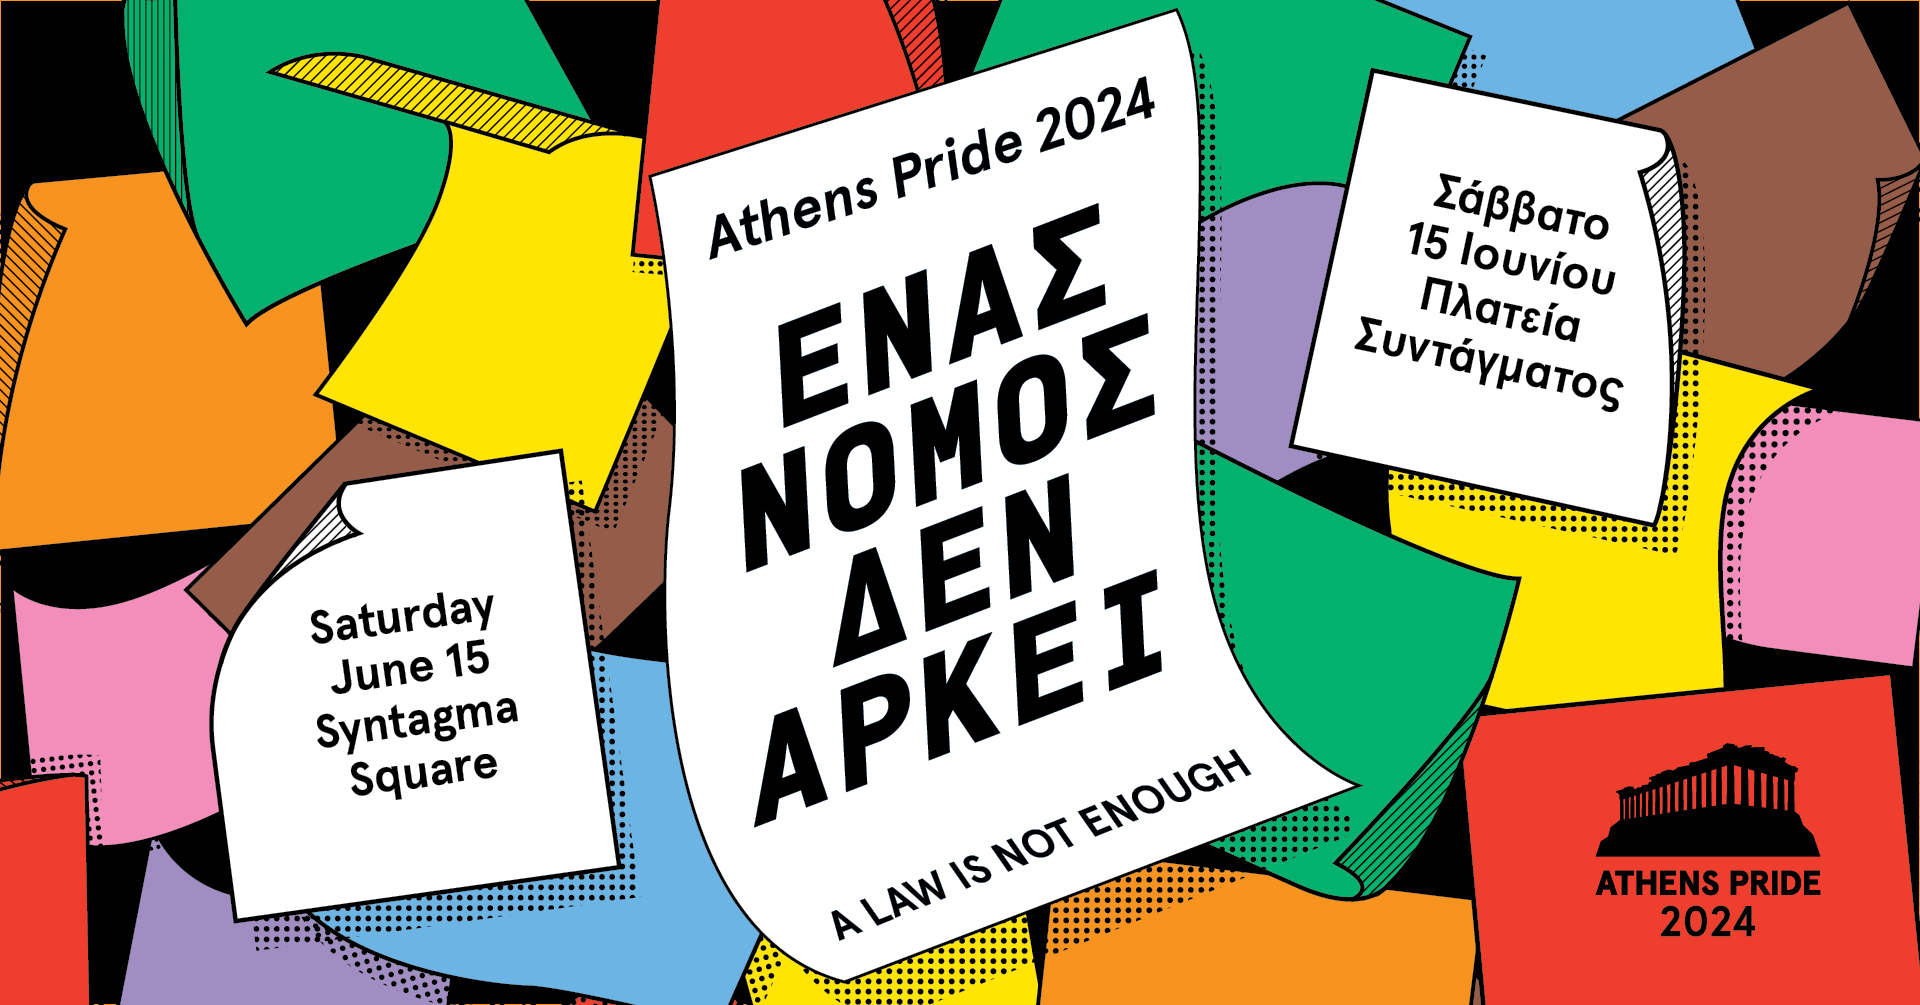 Ανοιχτό κάλεσμα για προτάσεις συμμετοχής στα Events του Athens Pride 2024.Προθεσμία 31 Μαρτίου